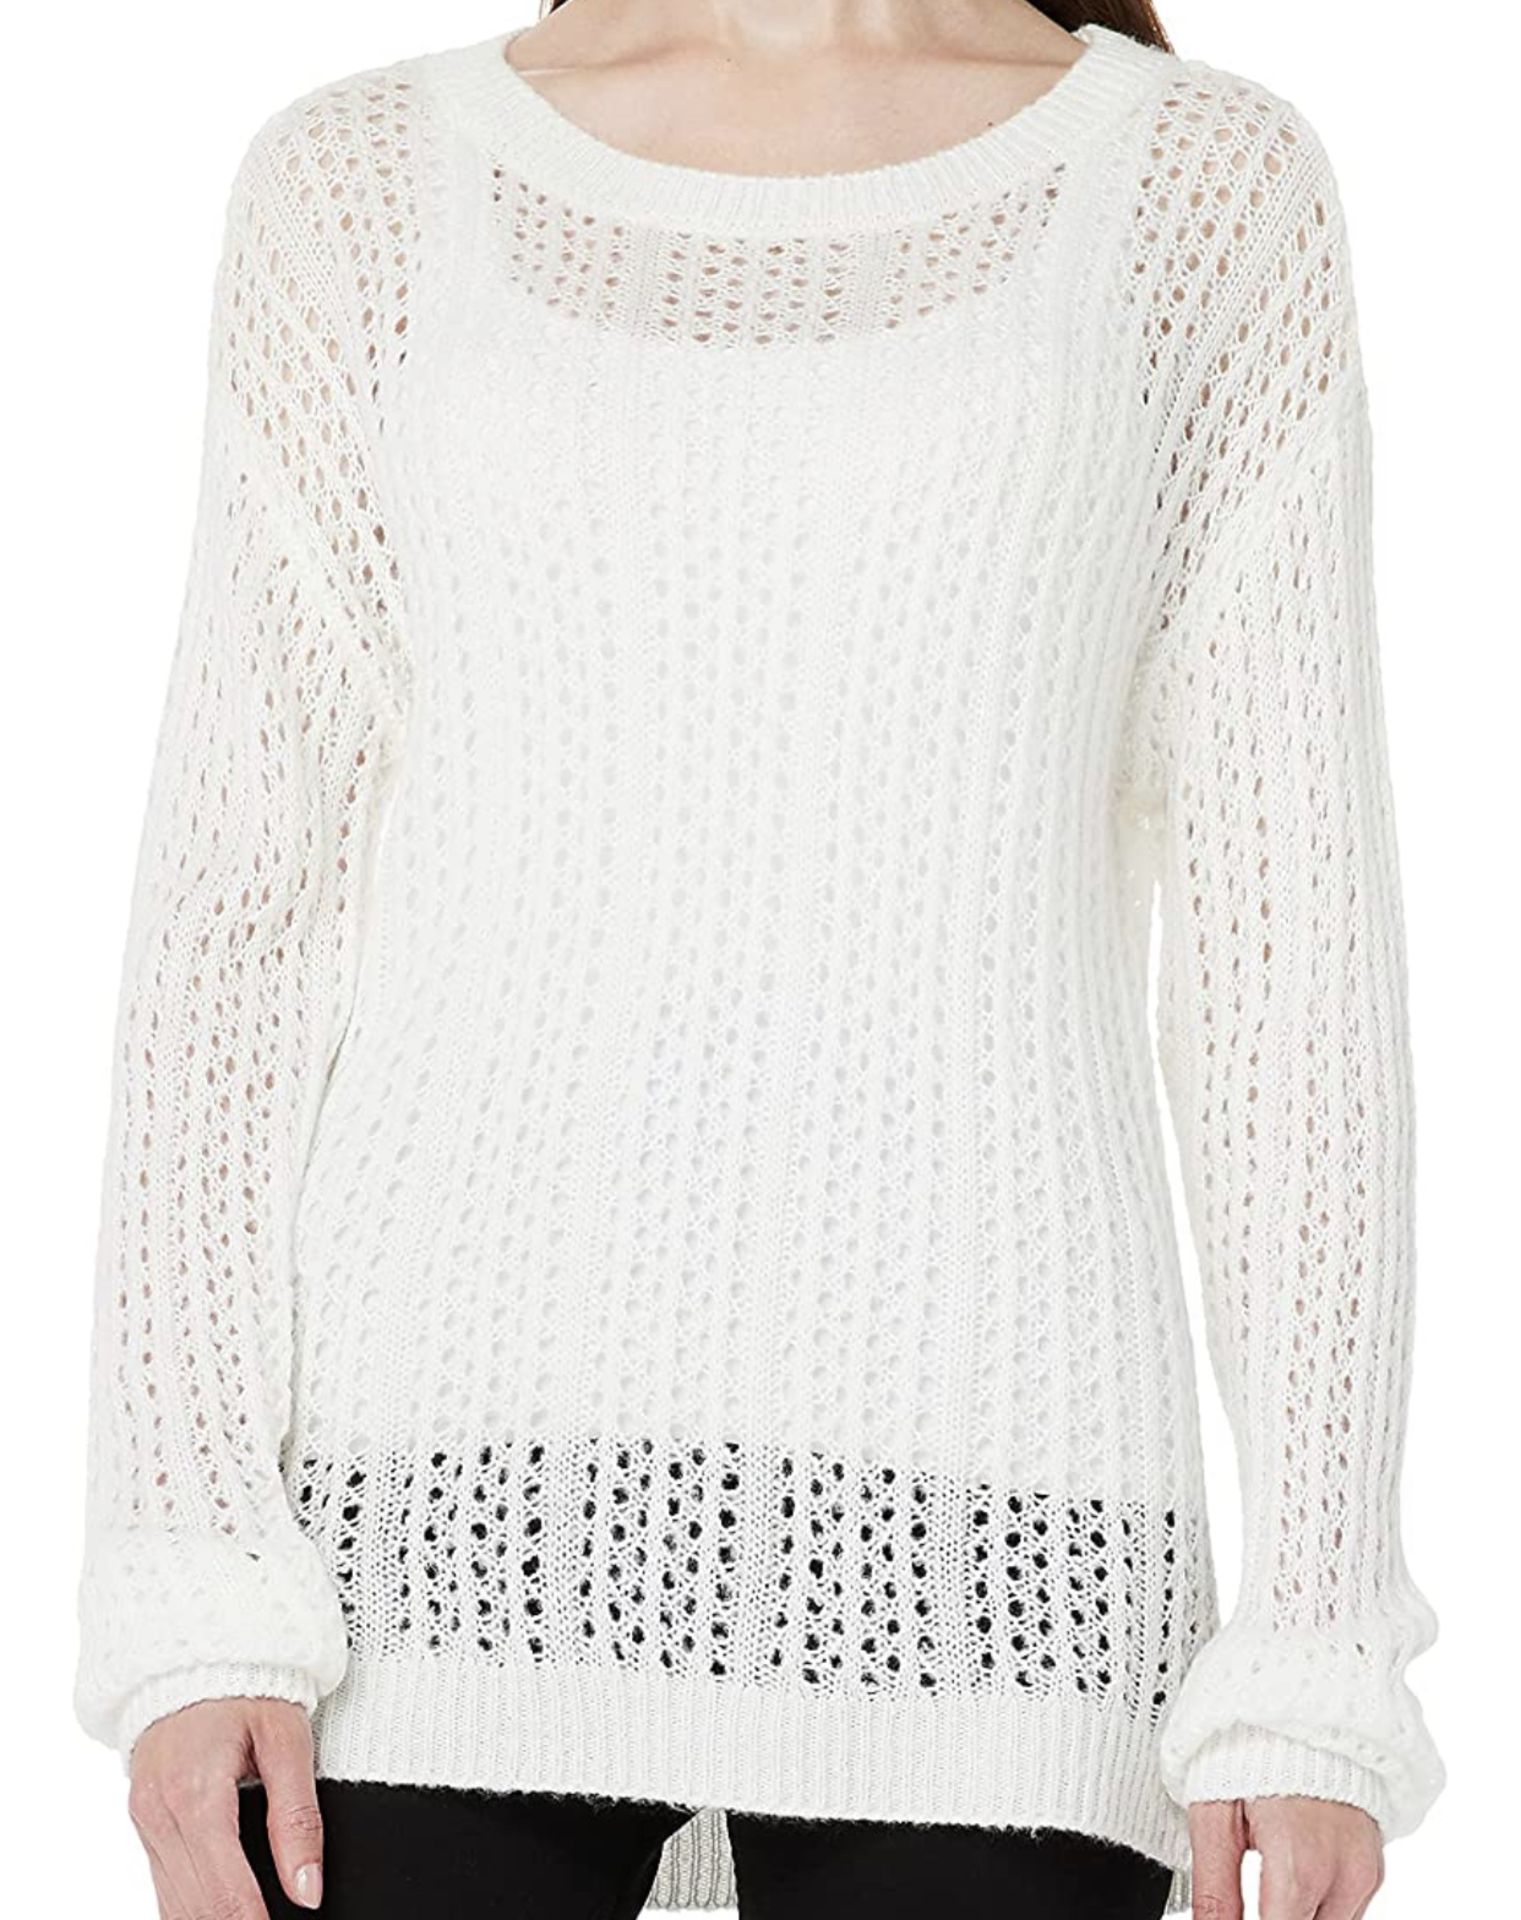 RRP £19.99 Hikaro Women's Eyelet Sweater Long Sleeve Knit Jumper, Large